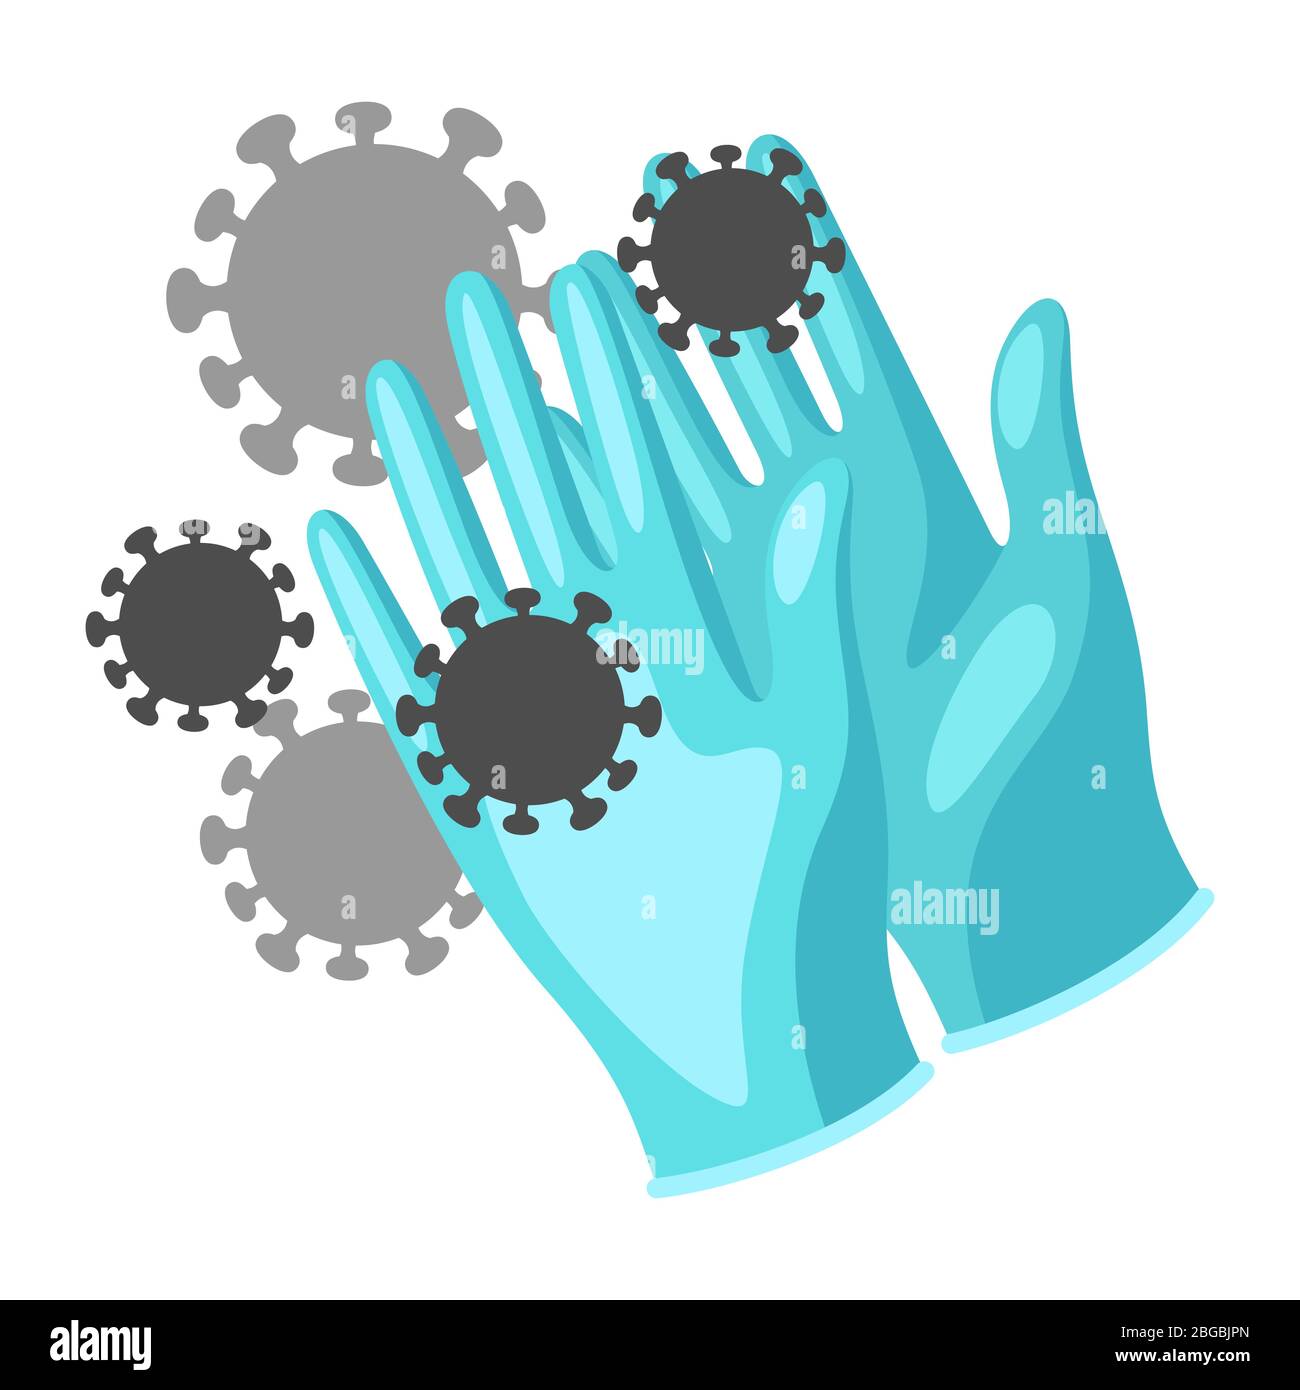 Illustrazione dei guanti protettivi per uso medico con molecole di coronavirus Covid-19. Illustrazione Vettoriale